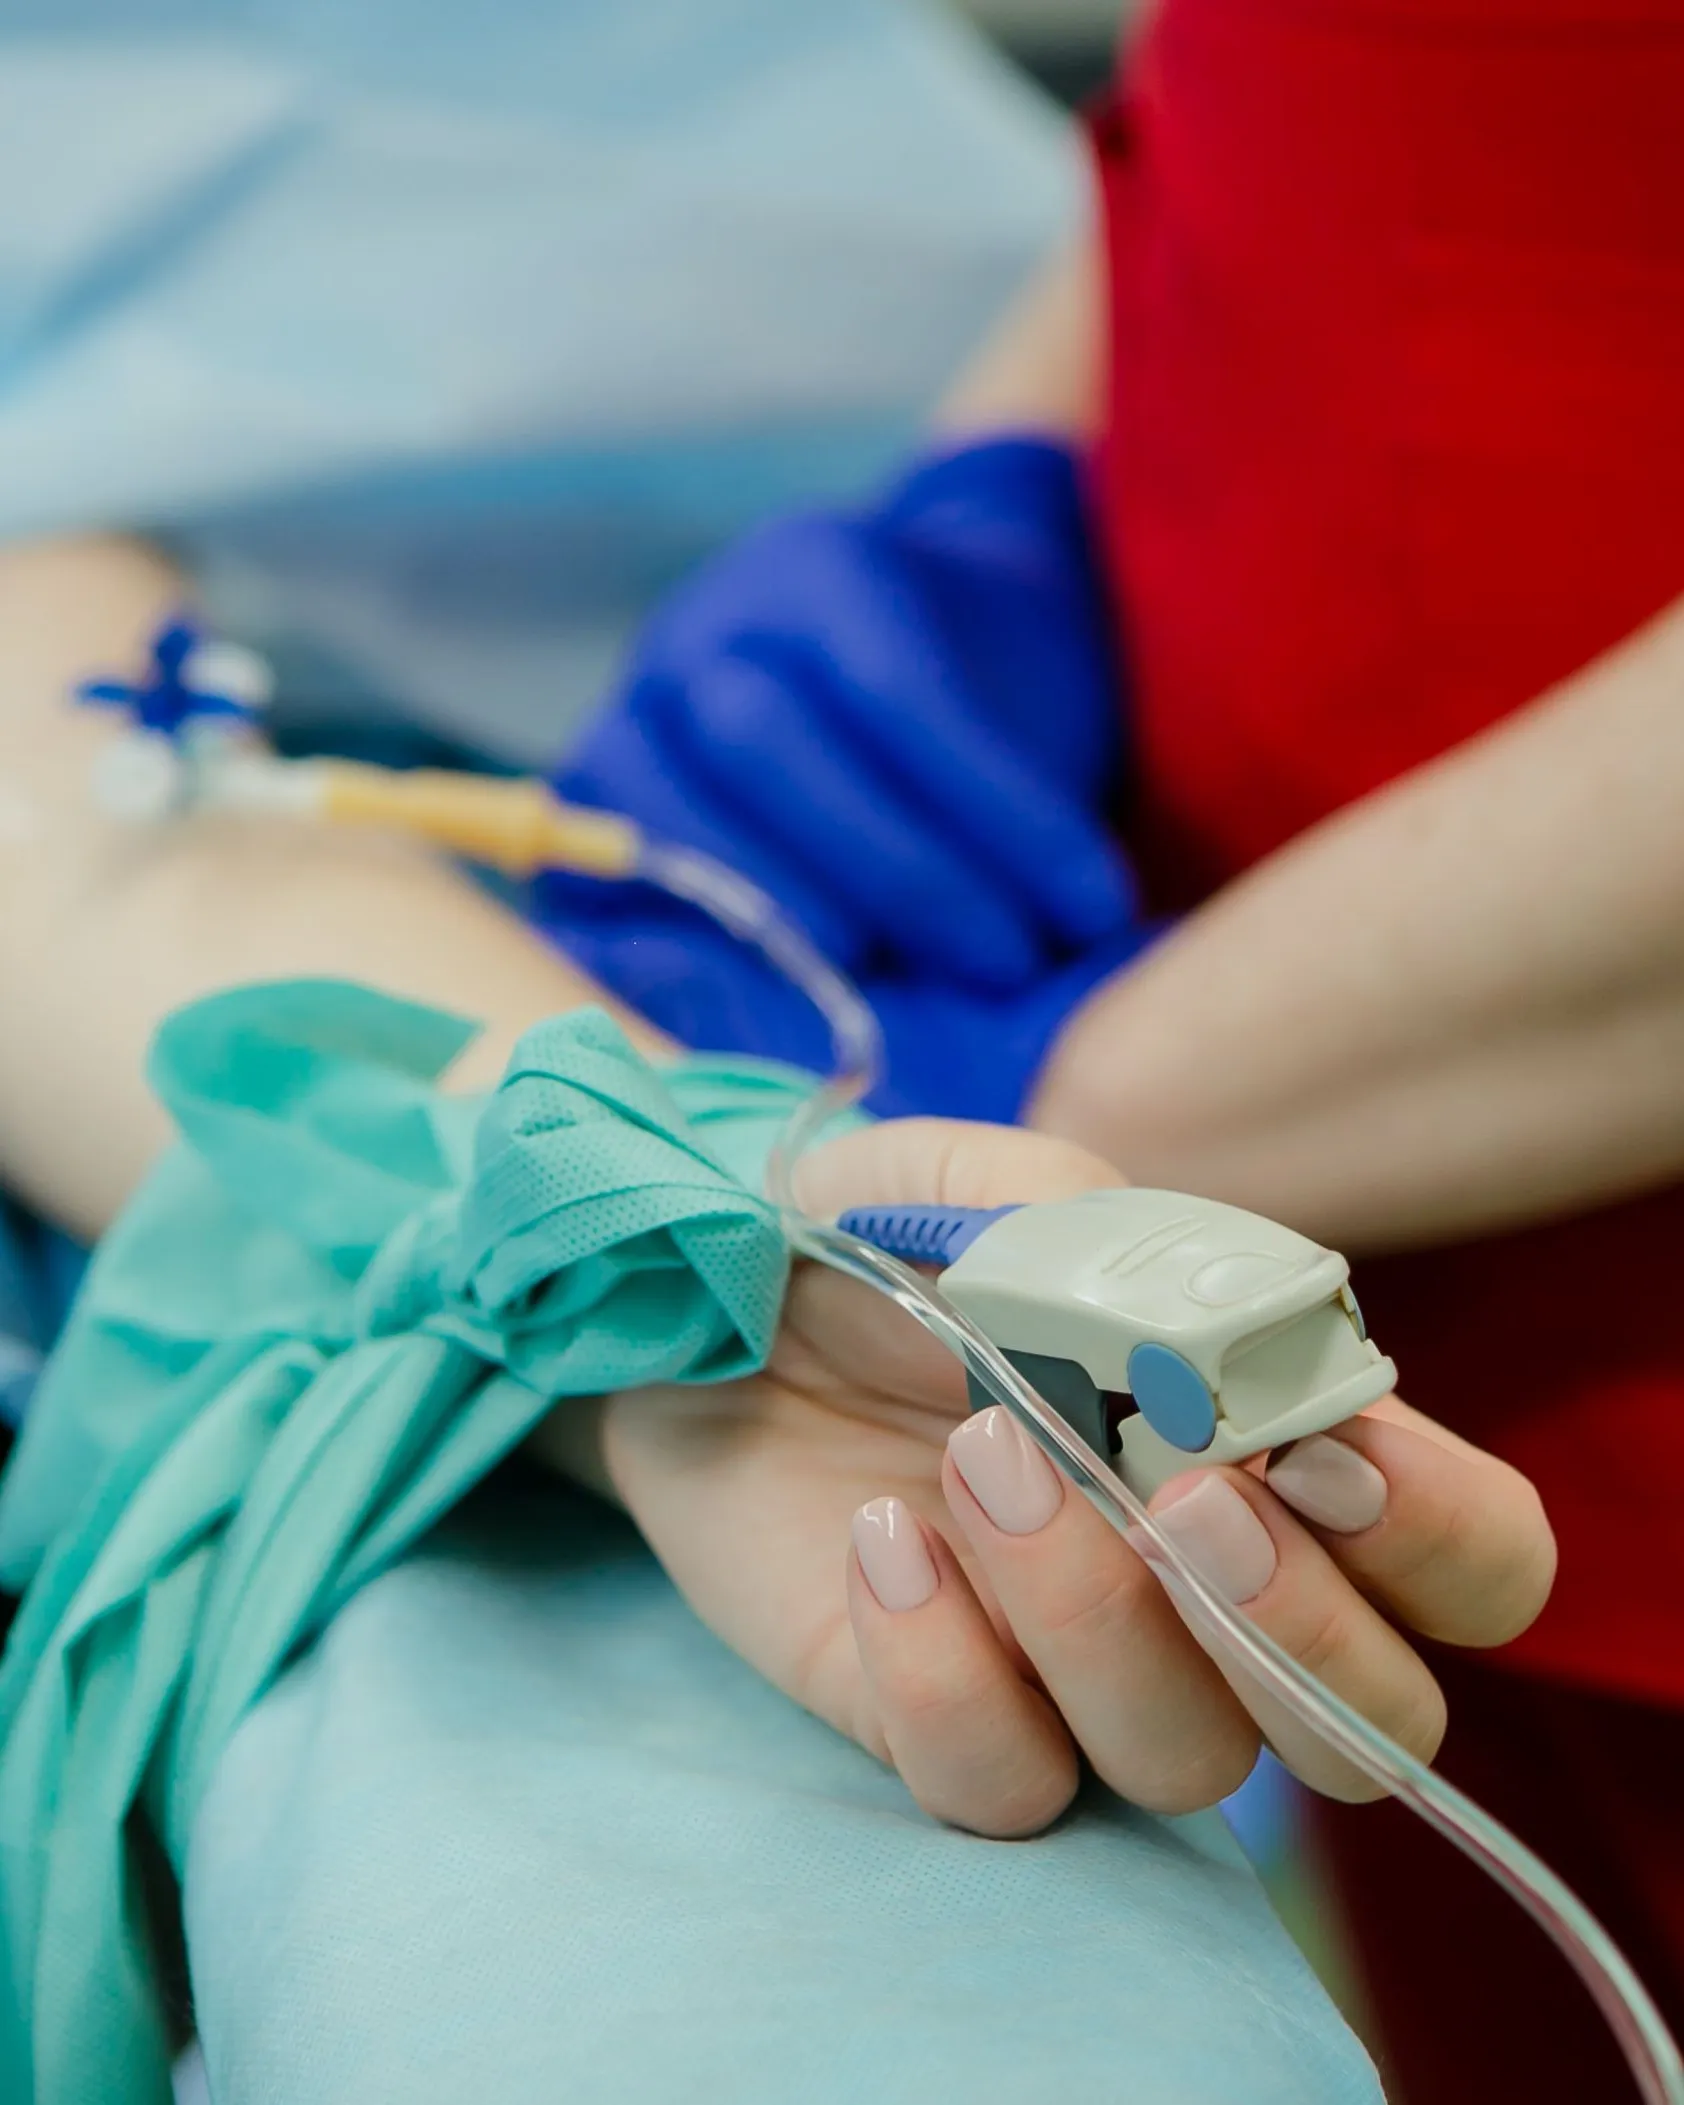 Některé české nemocnice odmítají zraněné Ukrajince. Týká se to těch, které ze země evakuují dobrovolníci